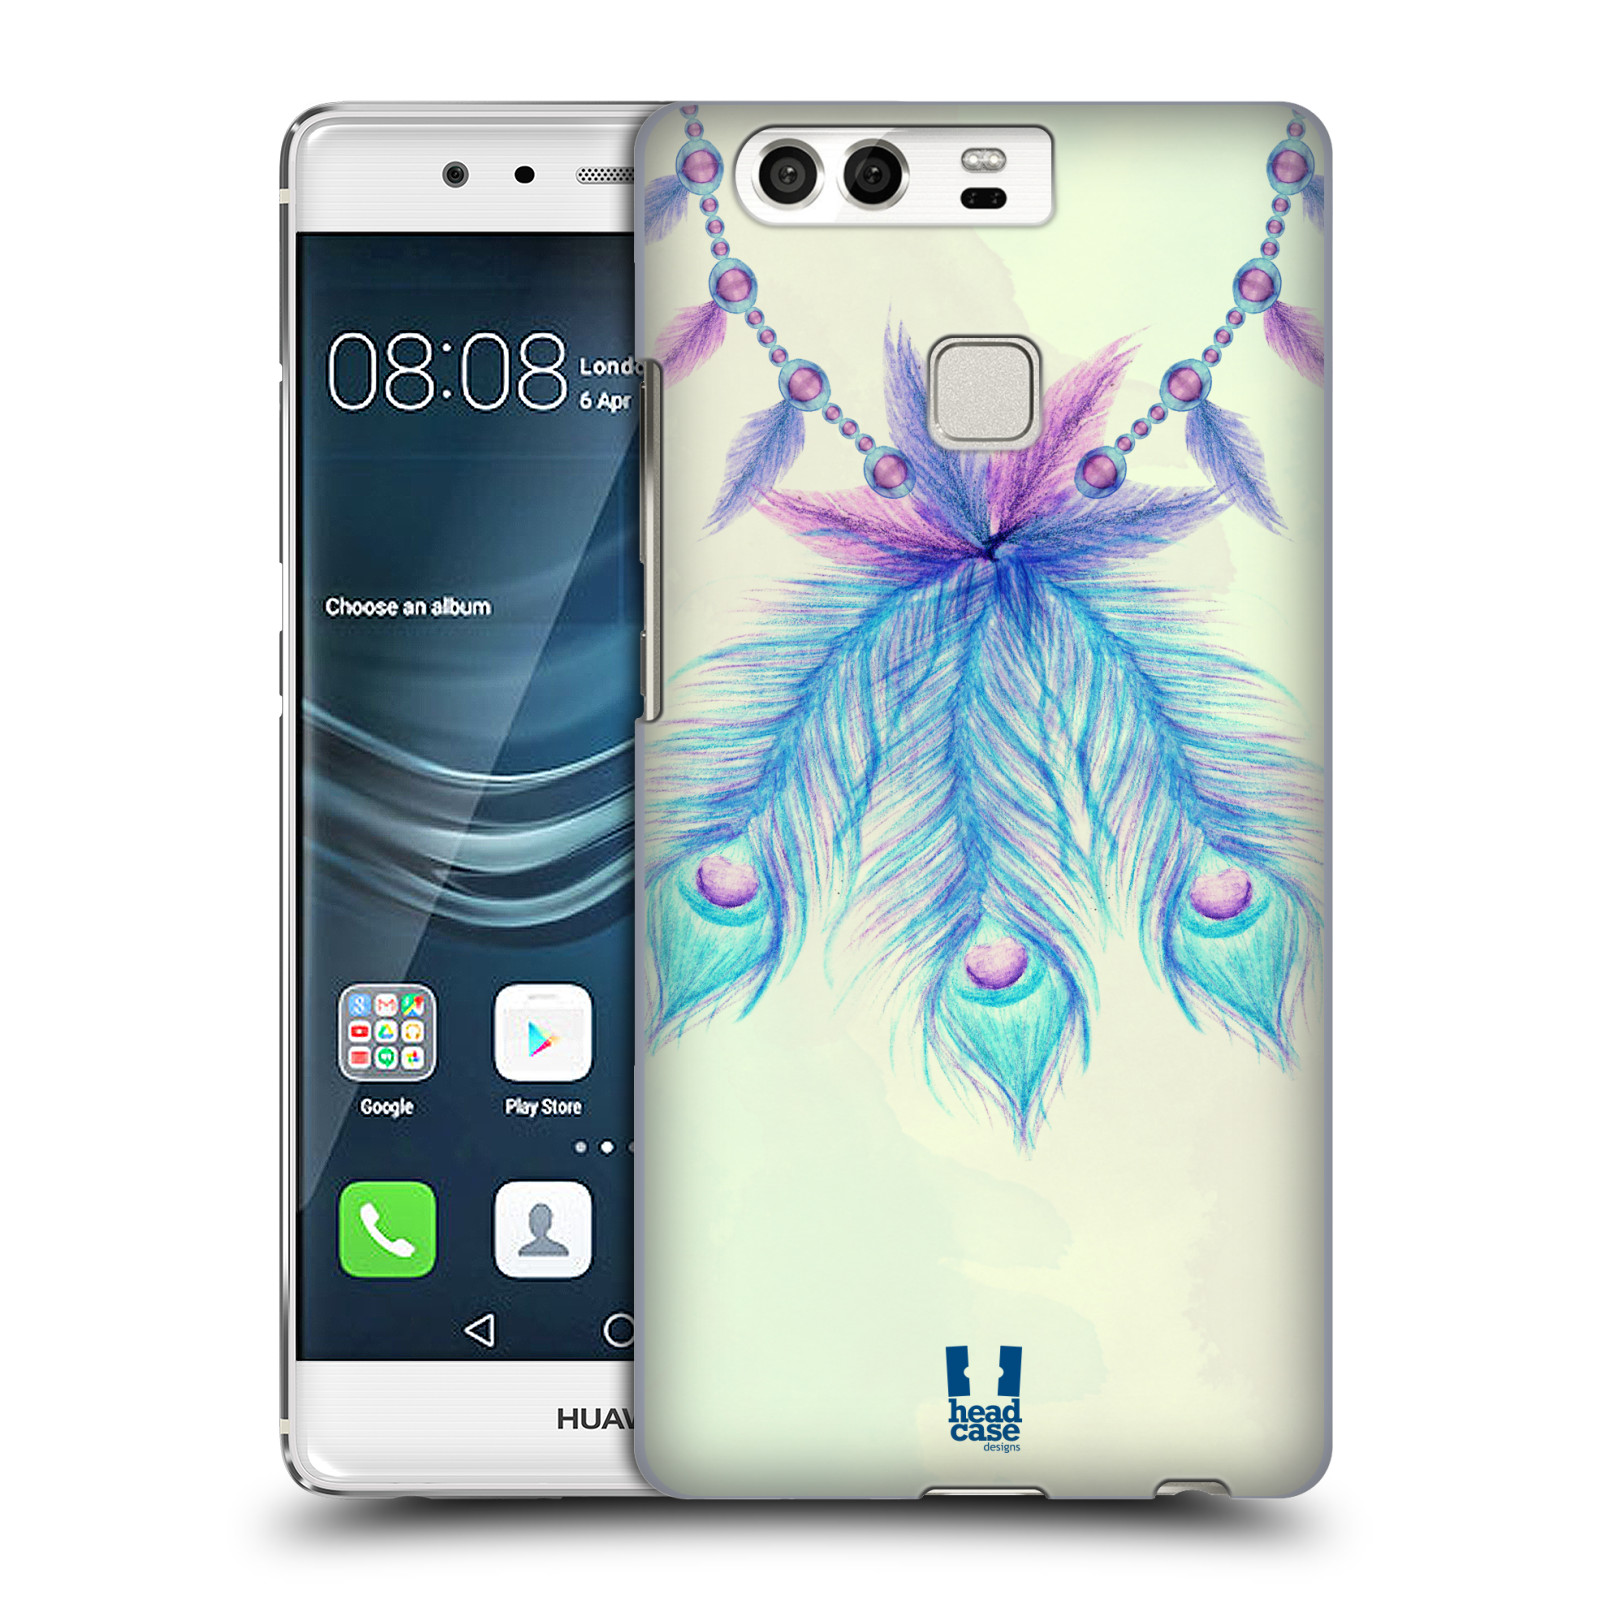 HEAD CASE plastový obal na mobil Huawei P9 / P9 DUAL SIM vzor Paví pírka barevná MODRÁ ŠTĚSTÍ